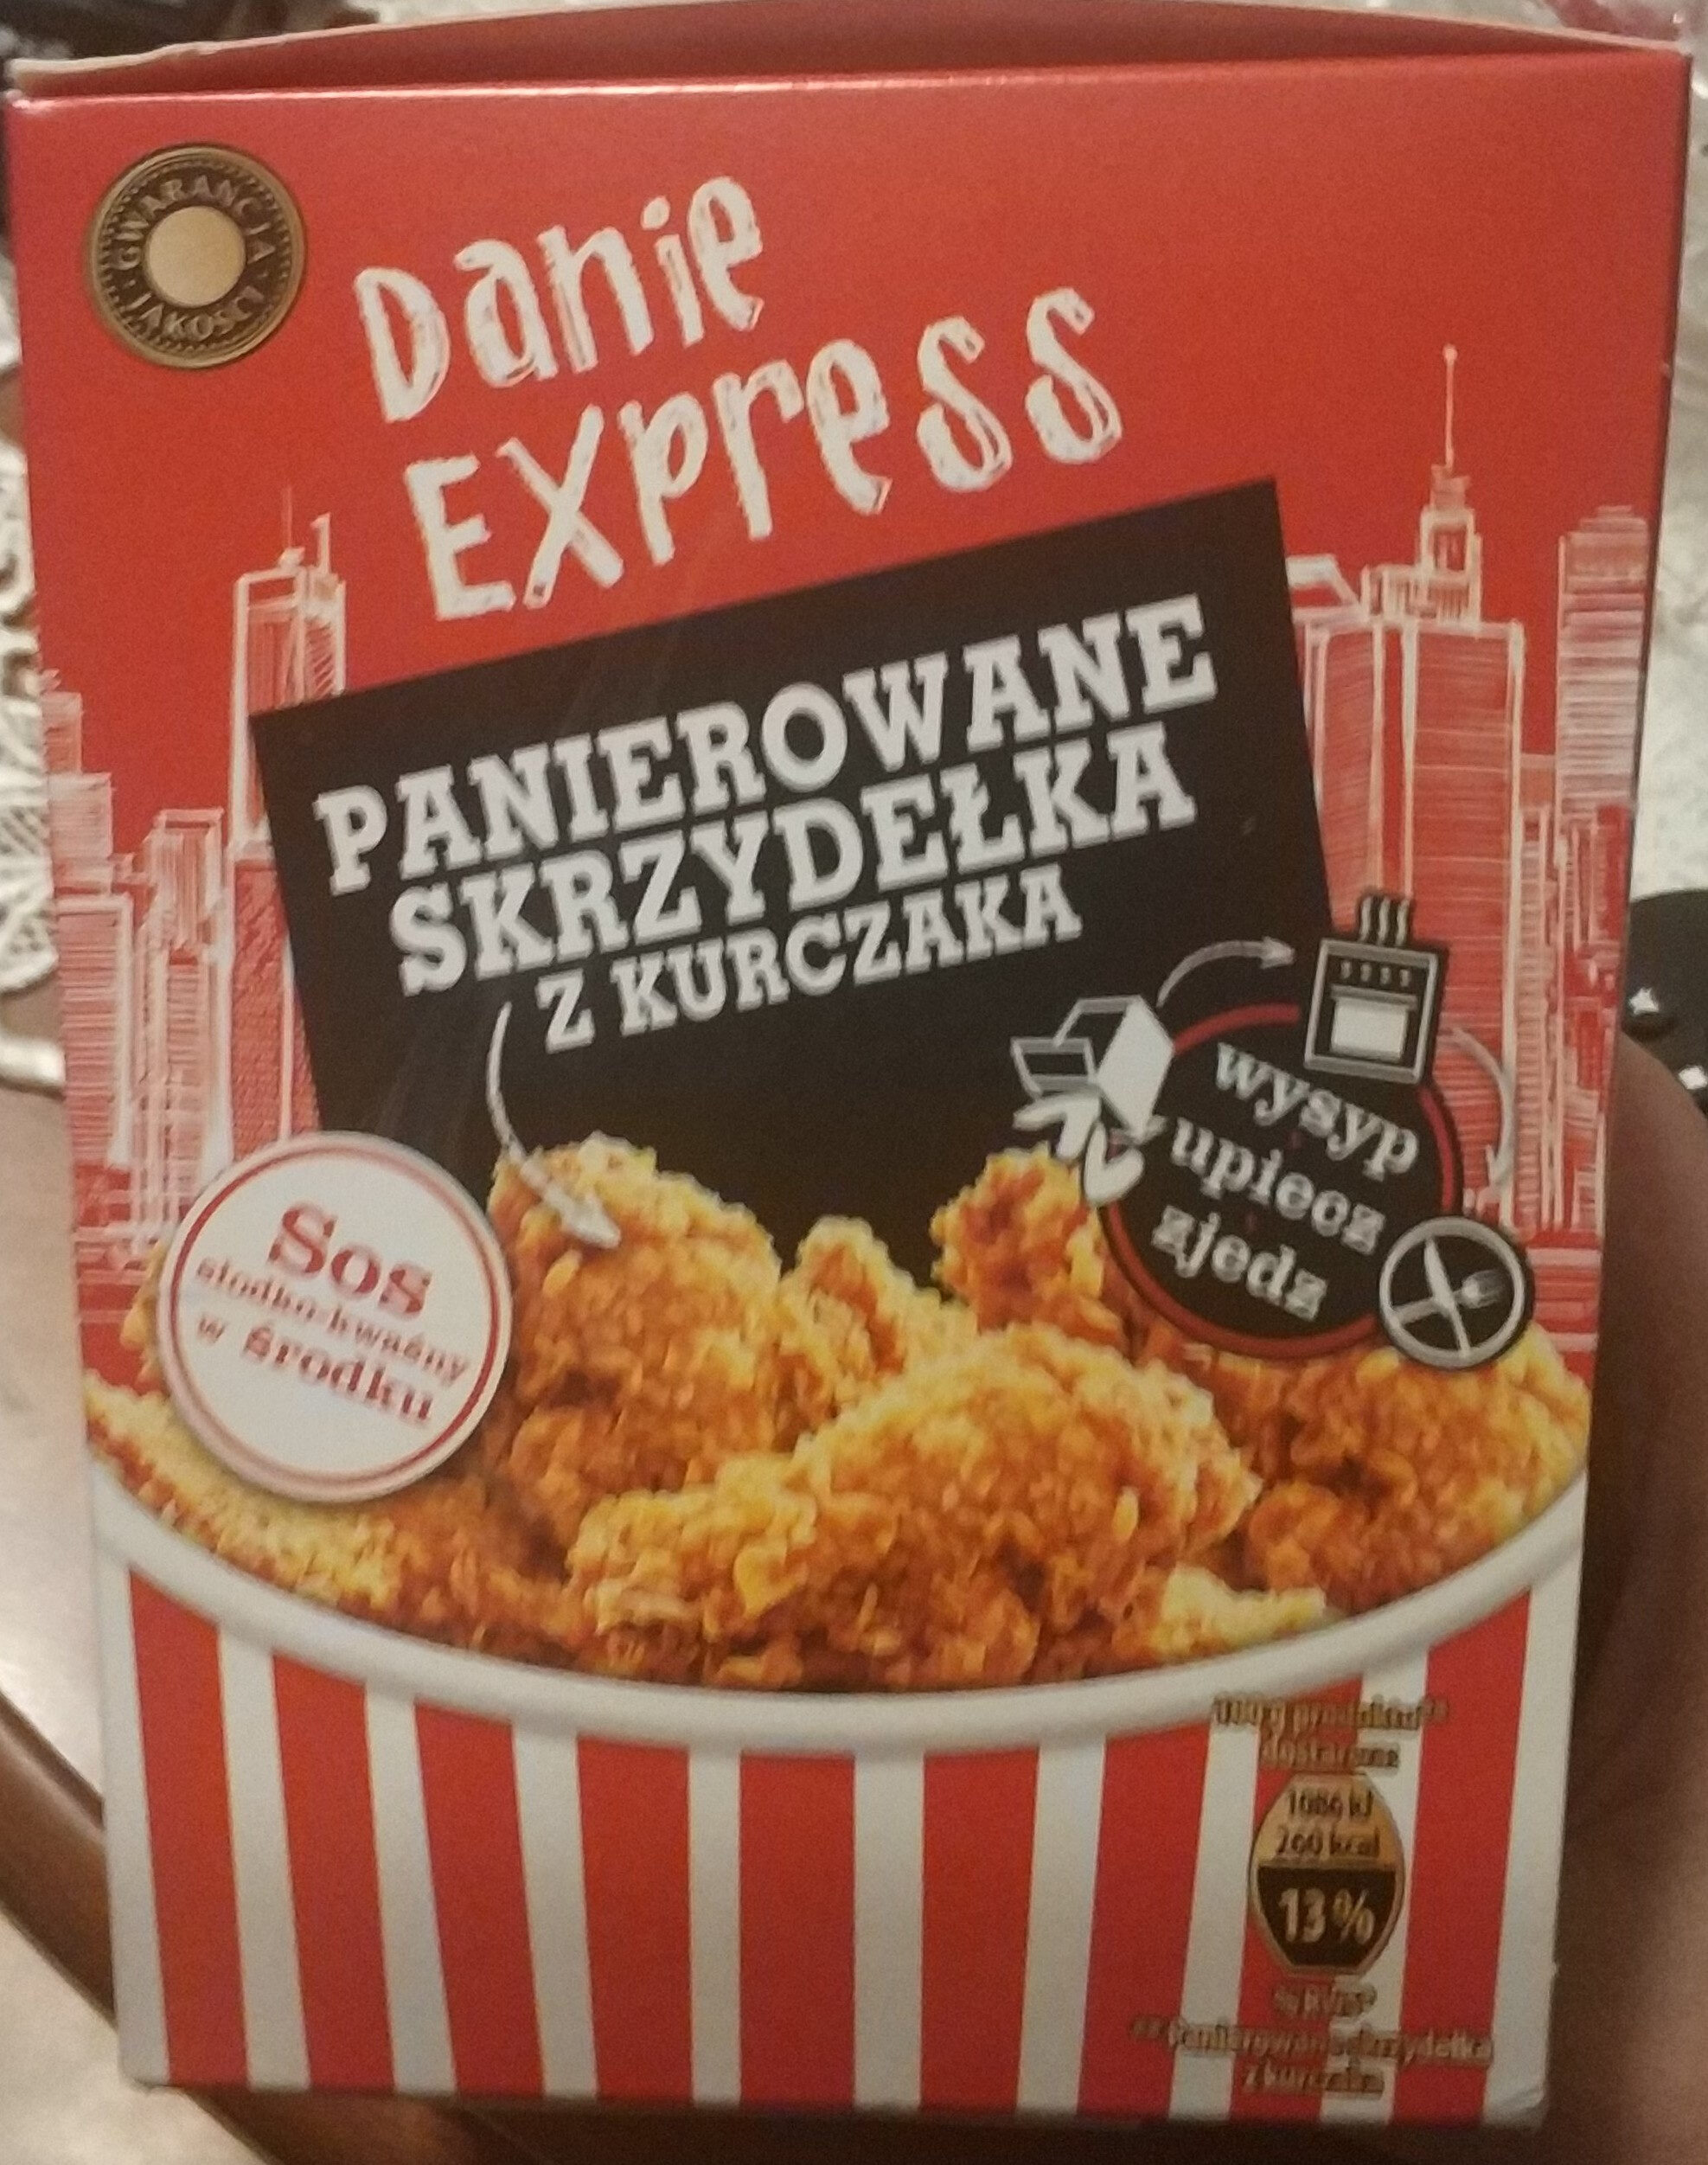 Danie express Panierowane skrzydełka z kurczaka - Product - pl